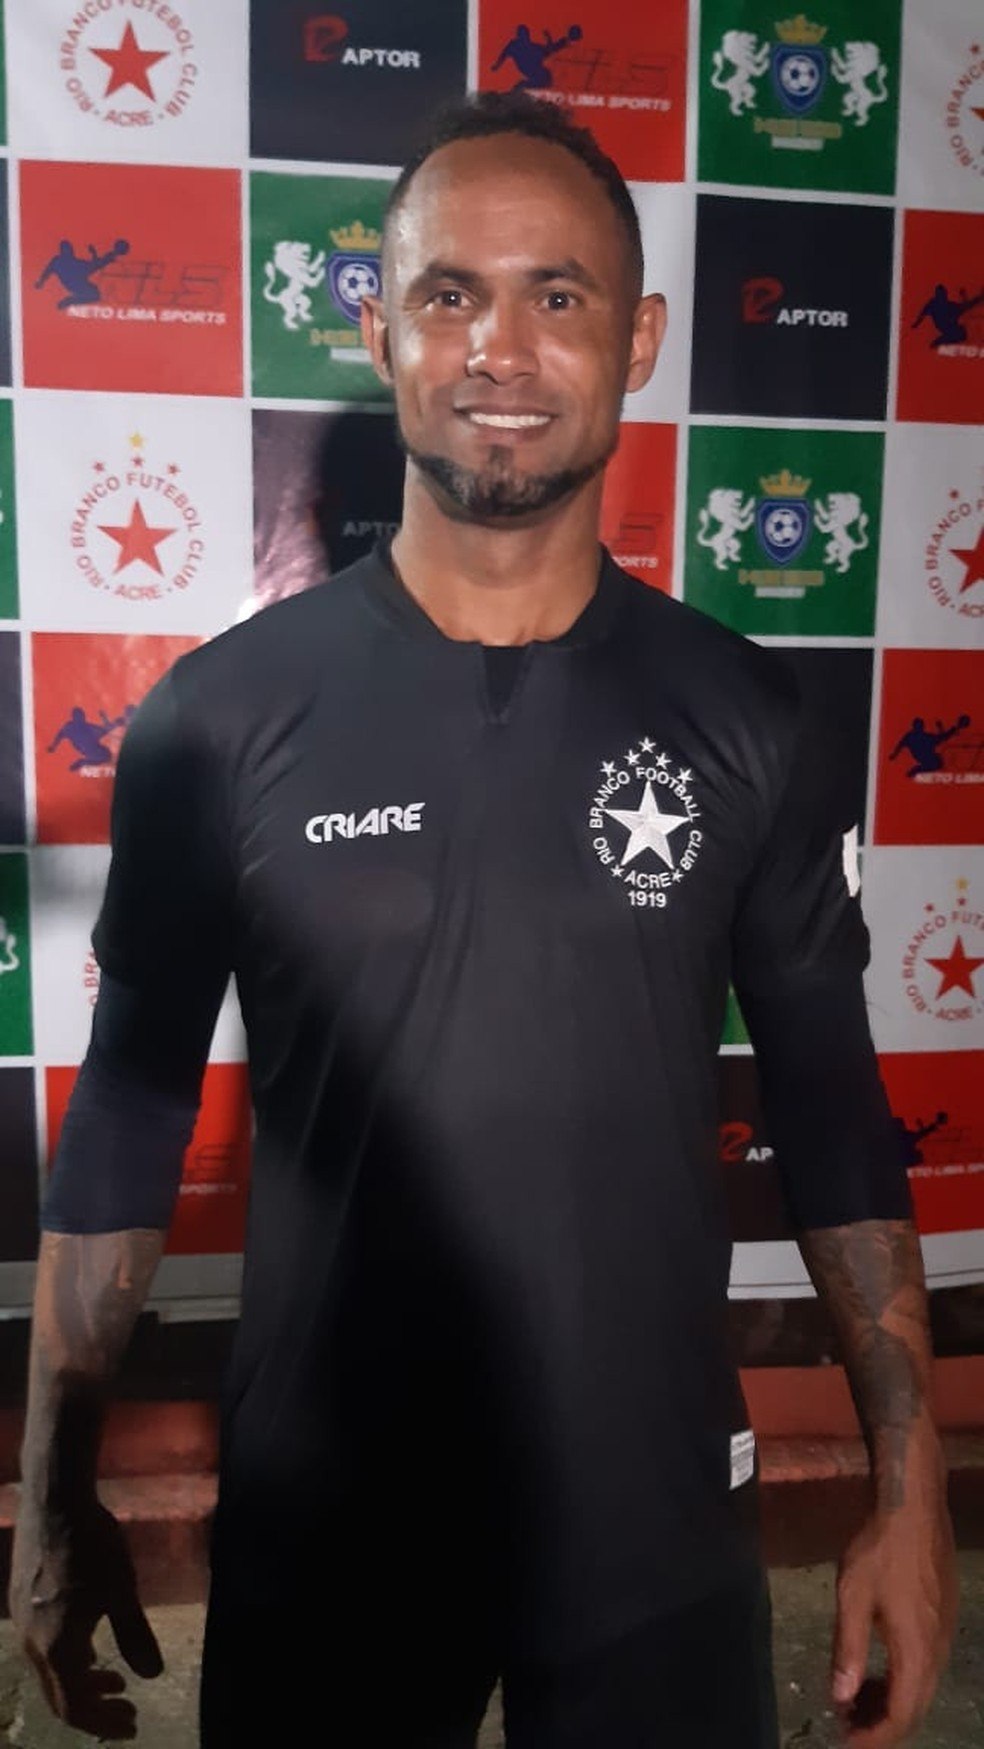 Time do goleiro Bruno joga final no Acre contra equipe da polícia -  11/09/2020 - Esporte - Folha